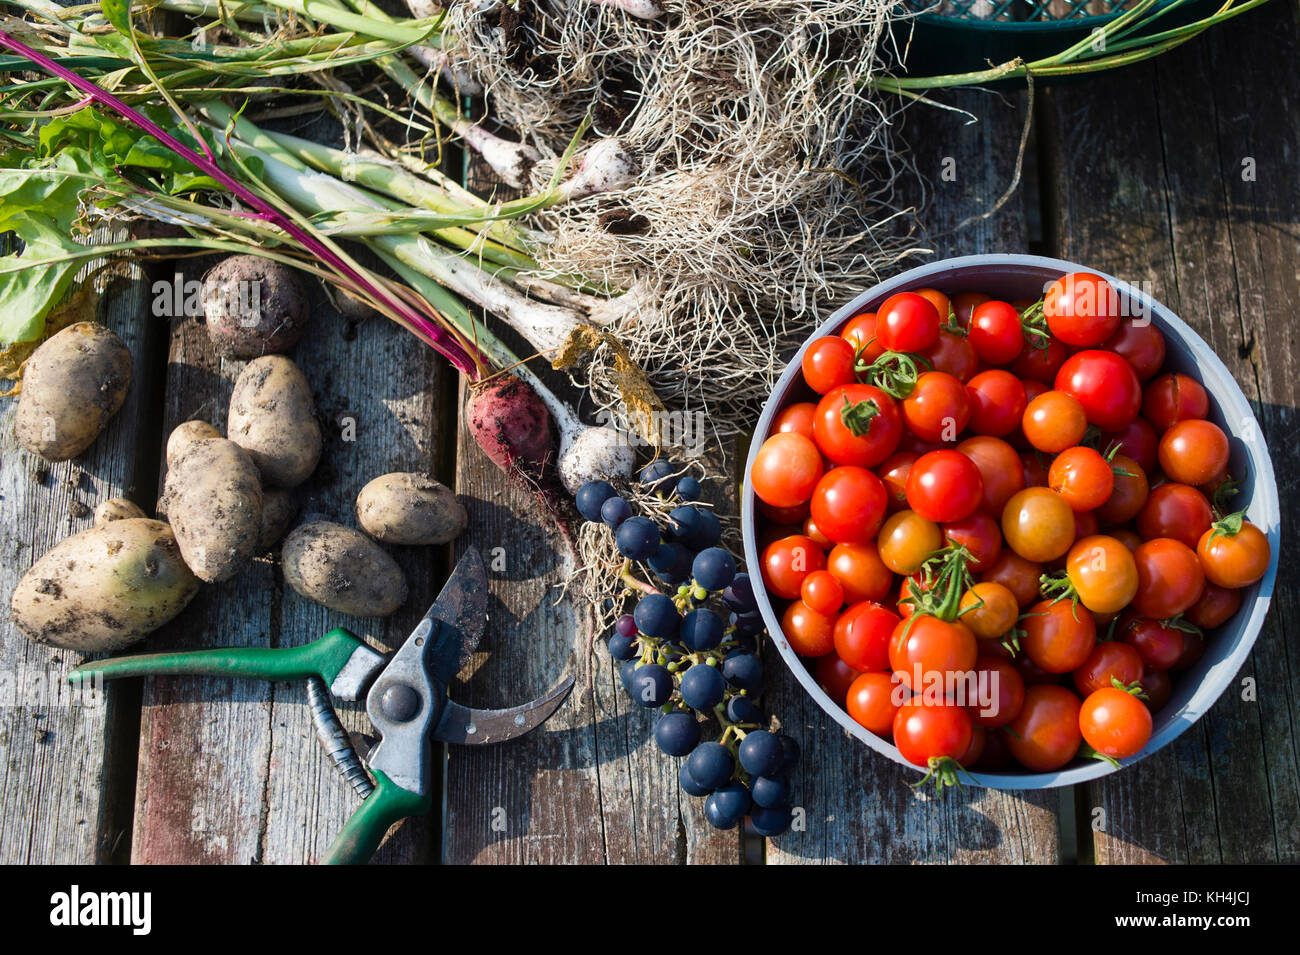 Appena raccolto di frutta e verdura steso su un banco di lavoro su un riparto giardino, aberystwyth wales uk (cipolle, uva, pomodori, fave, rabarbaro, patate) Foto Stock